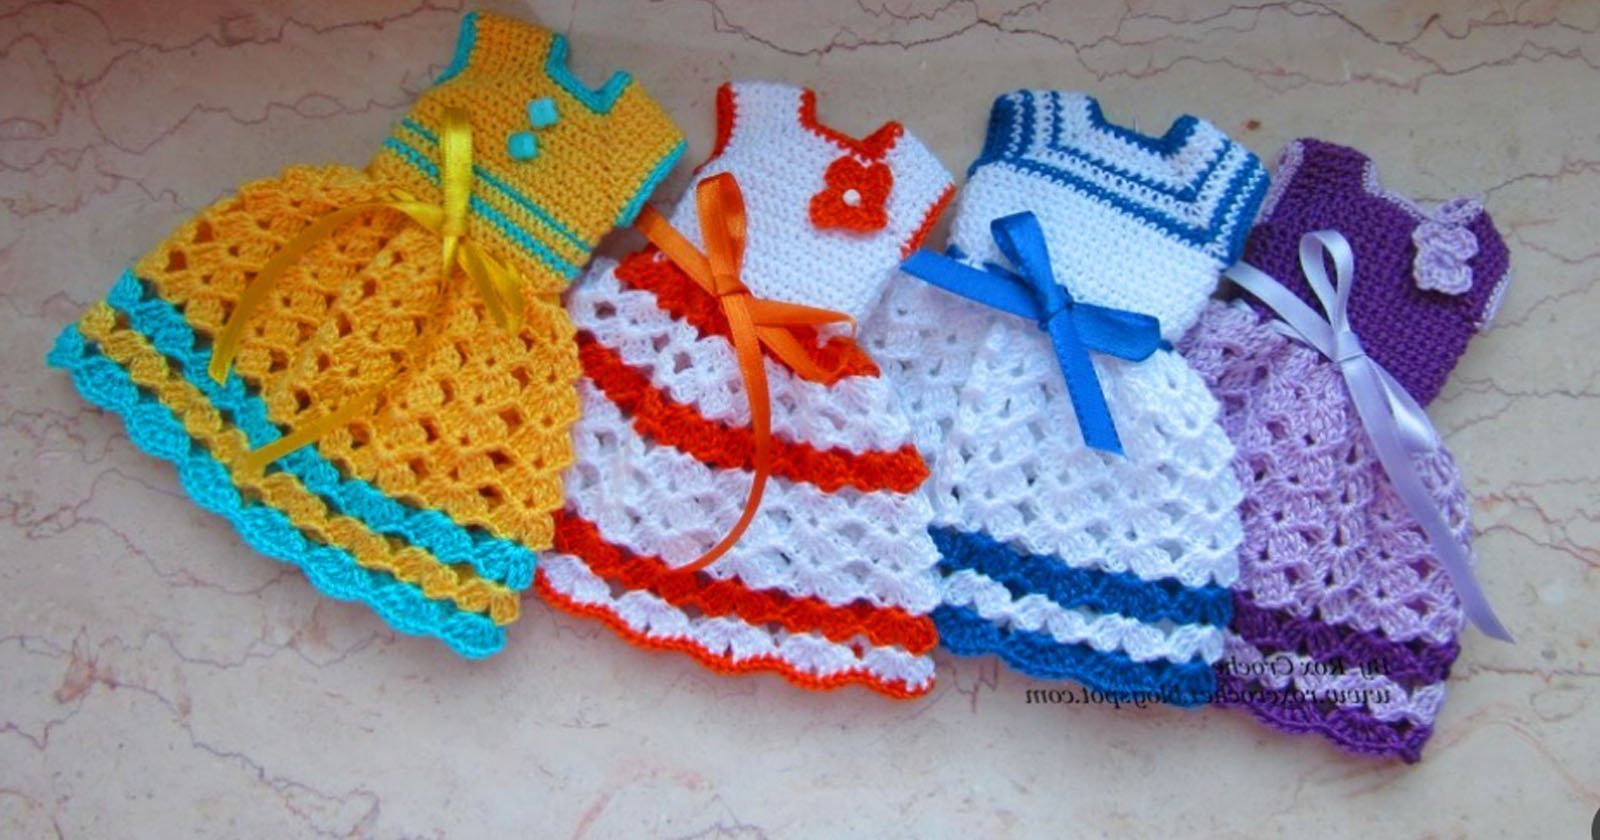 6 sugestões interessantes de vestidinho de crochê para festa junina